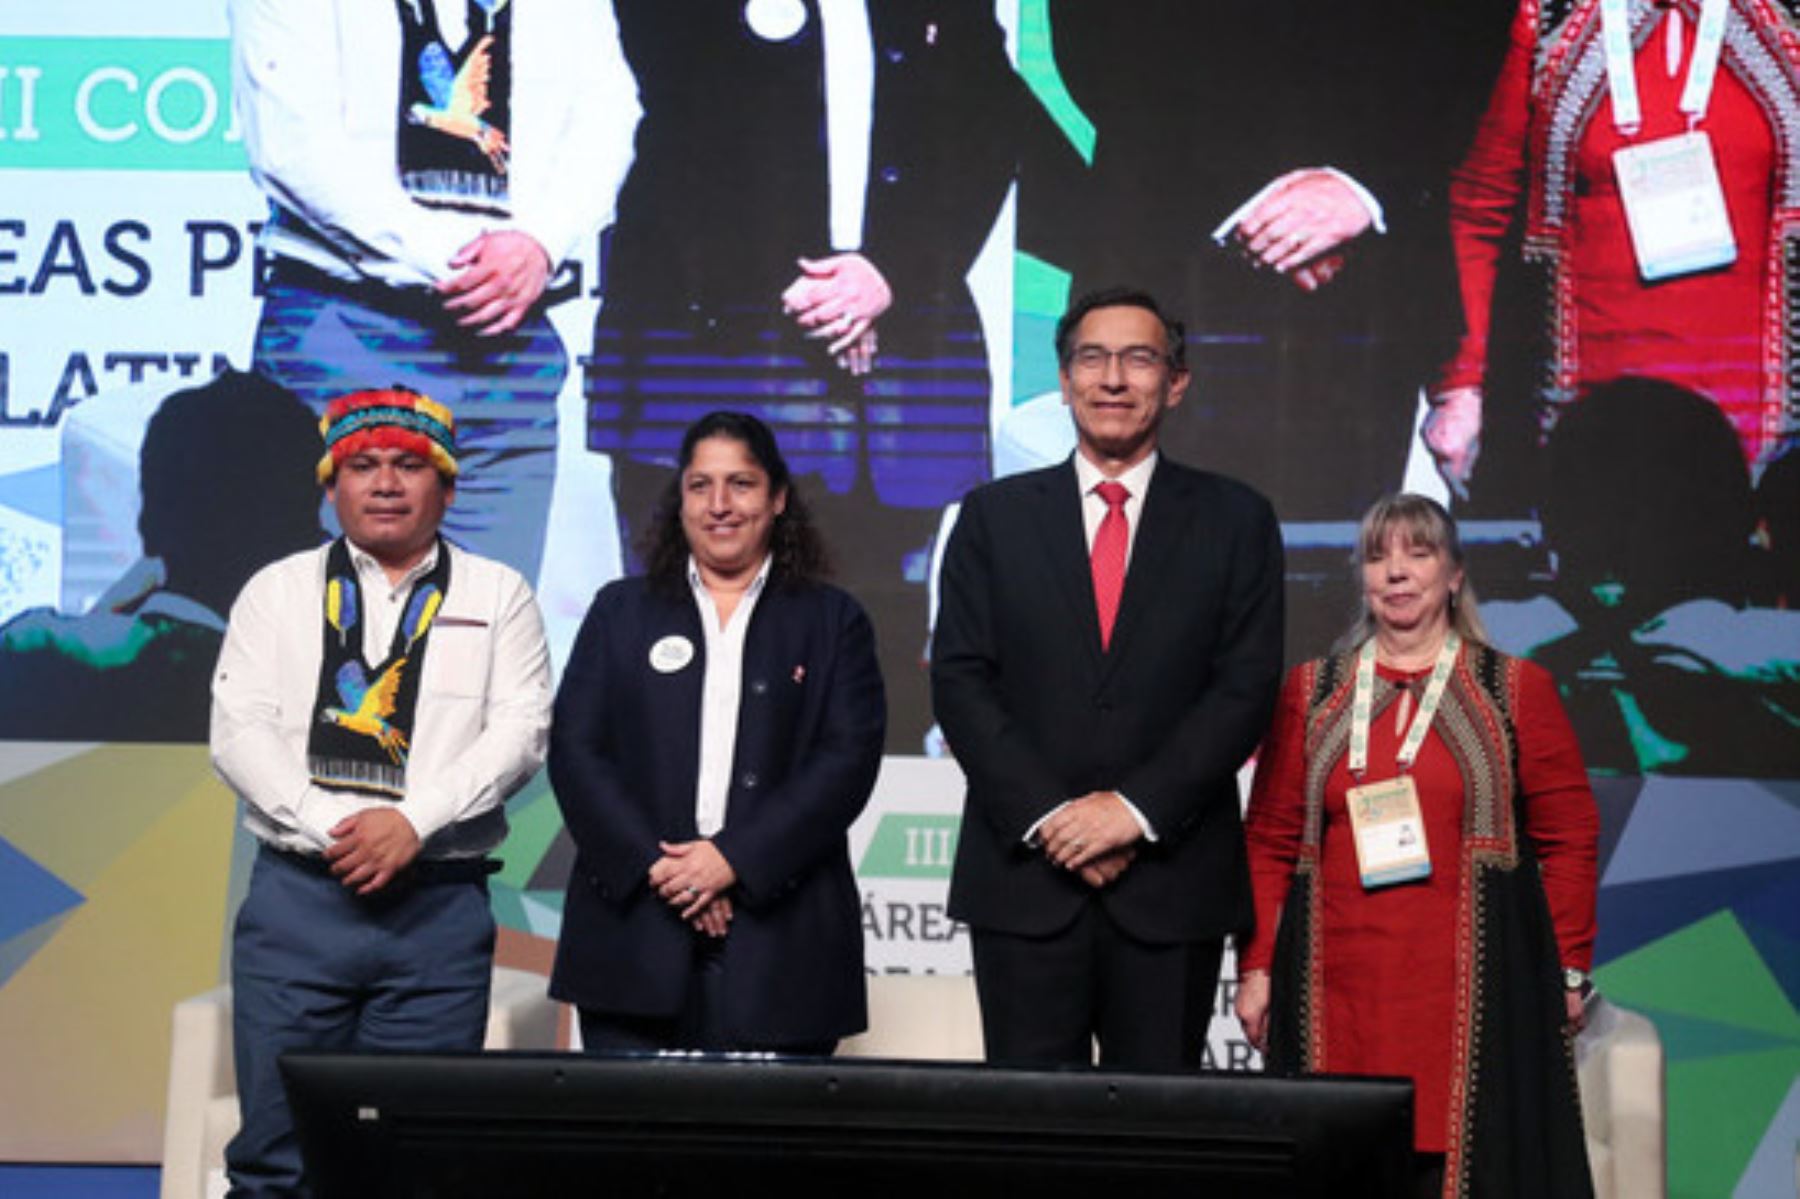 Gobierno ratifica compromiso para fortalecer conservación de áreas naturales protegidas en congreso donde participan representantes de América Latina y el Caribe. ANDINA/Difusión